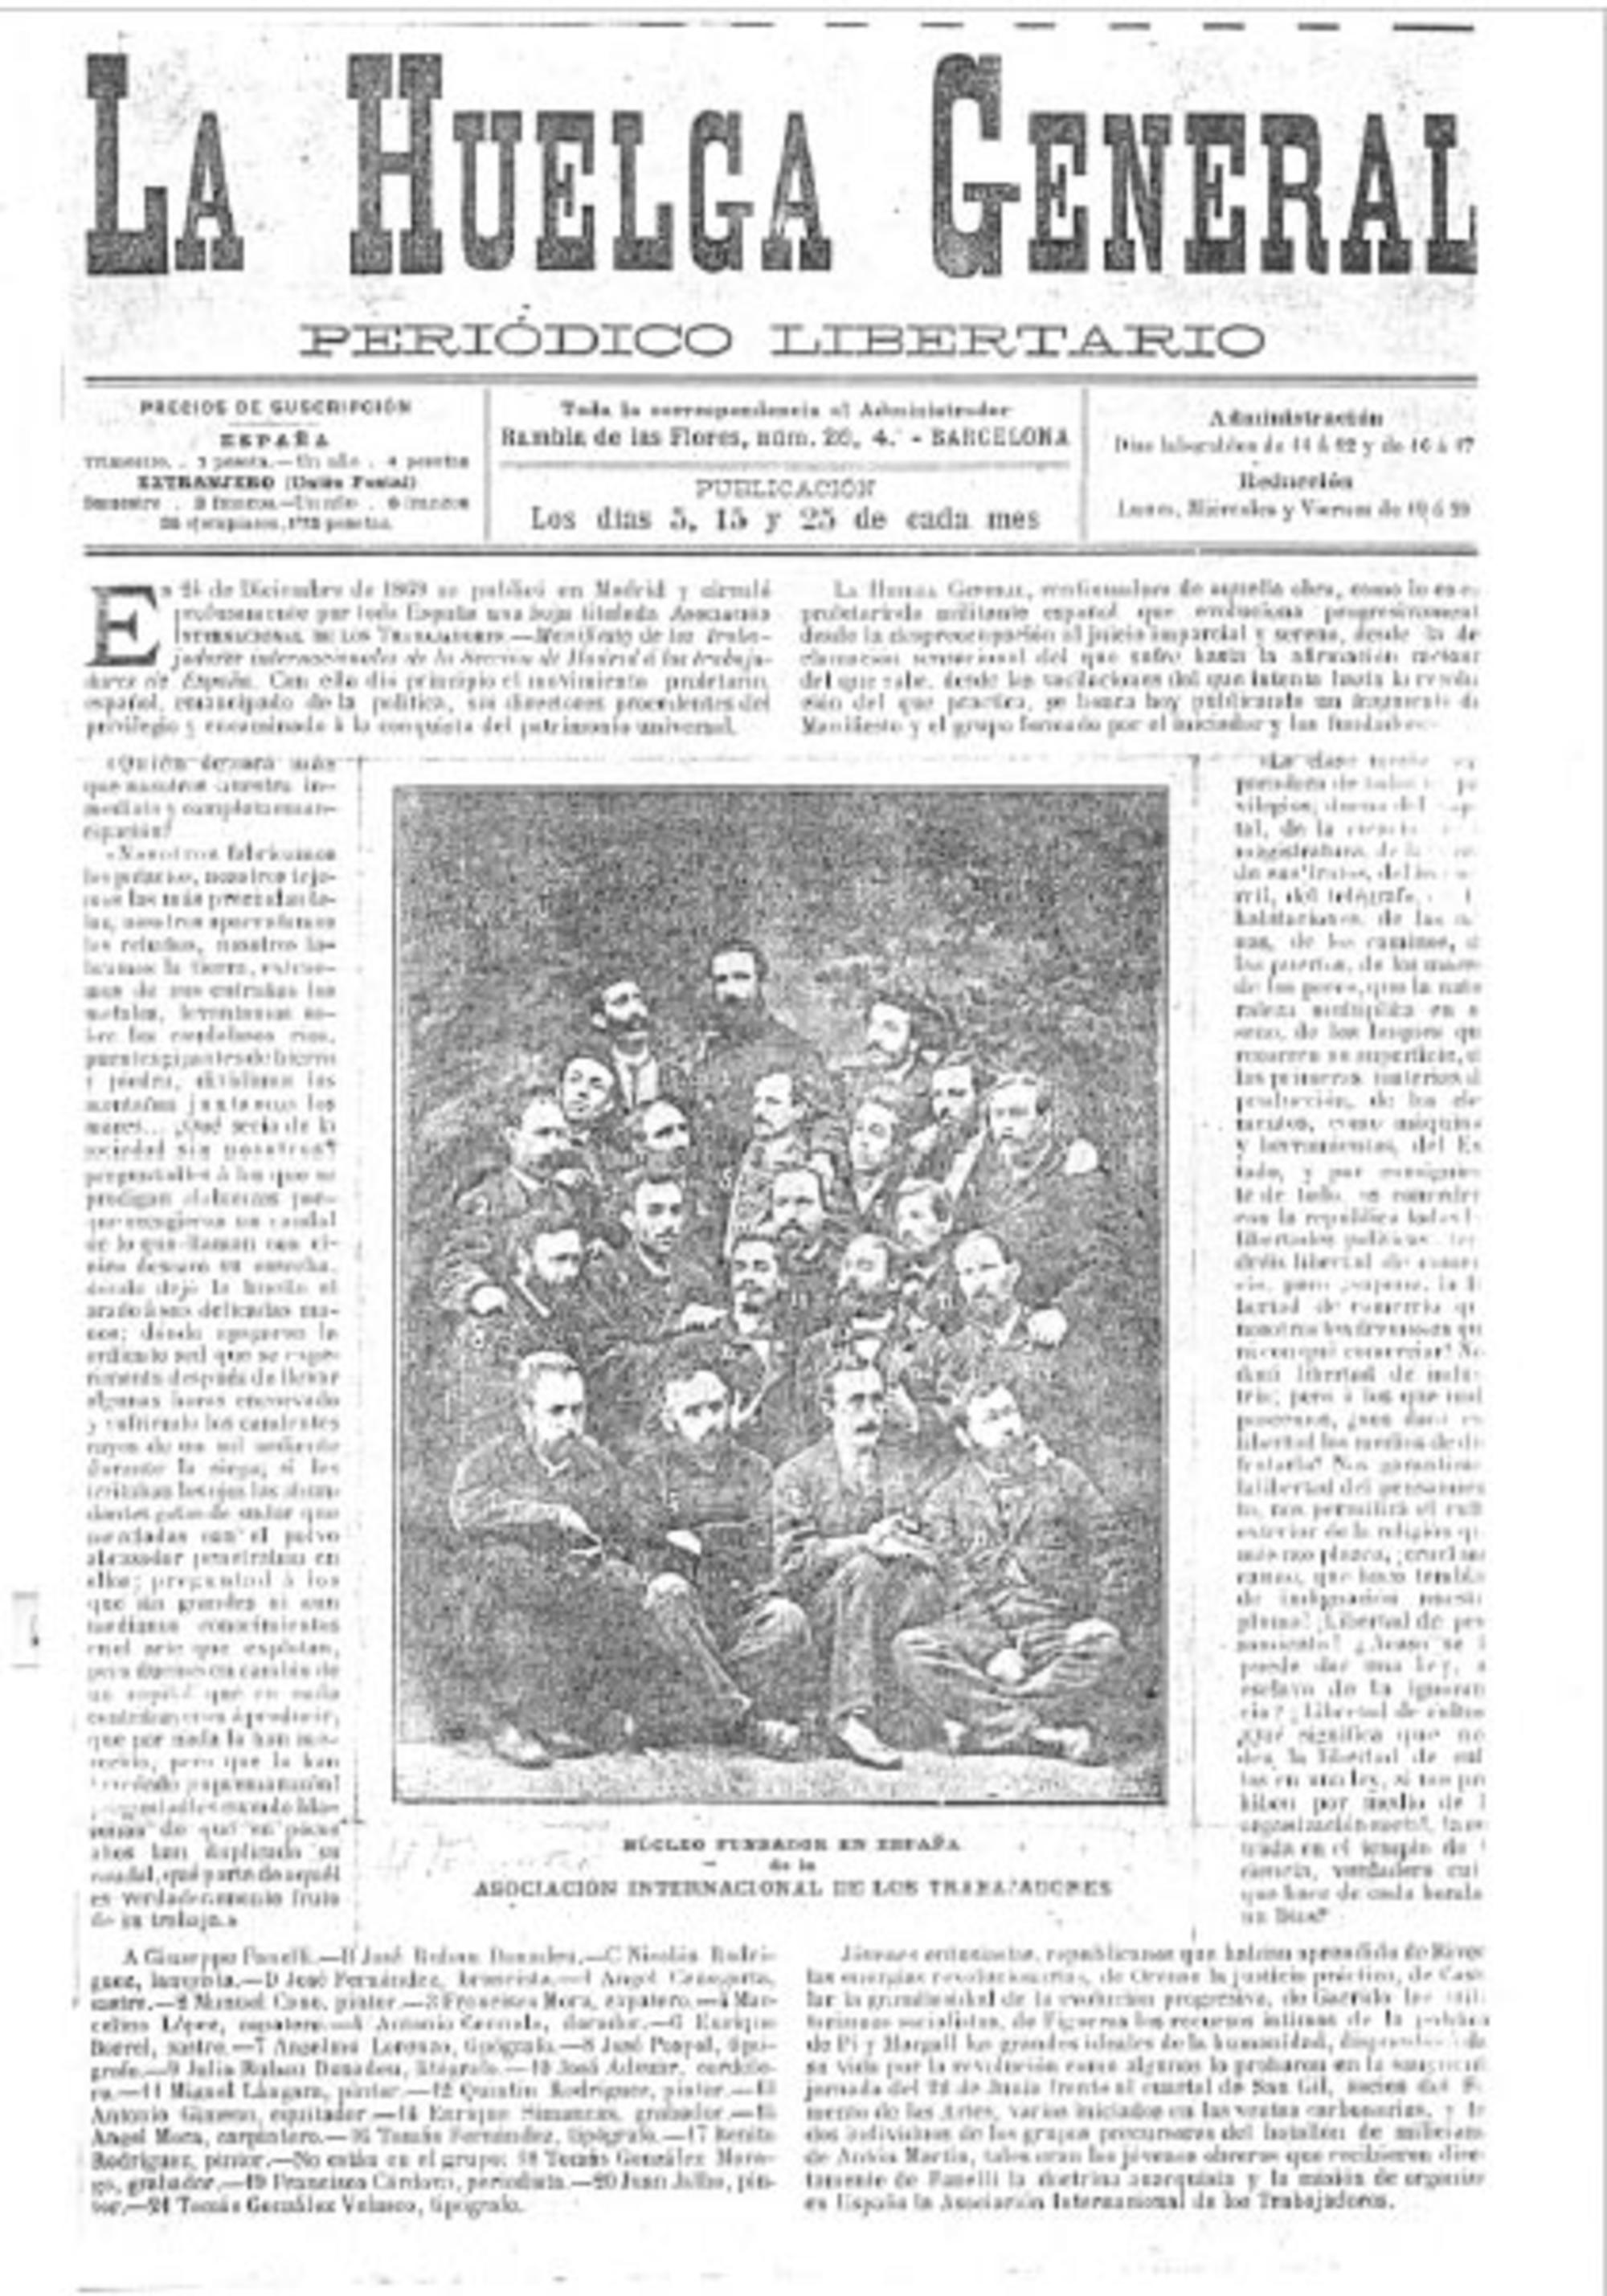 Primera publicación de la fotografía del núcleo organizador en España. 